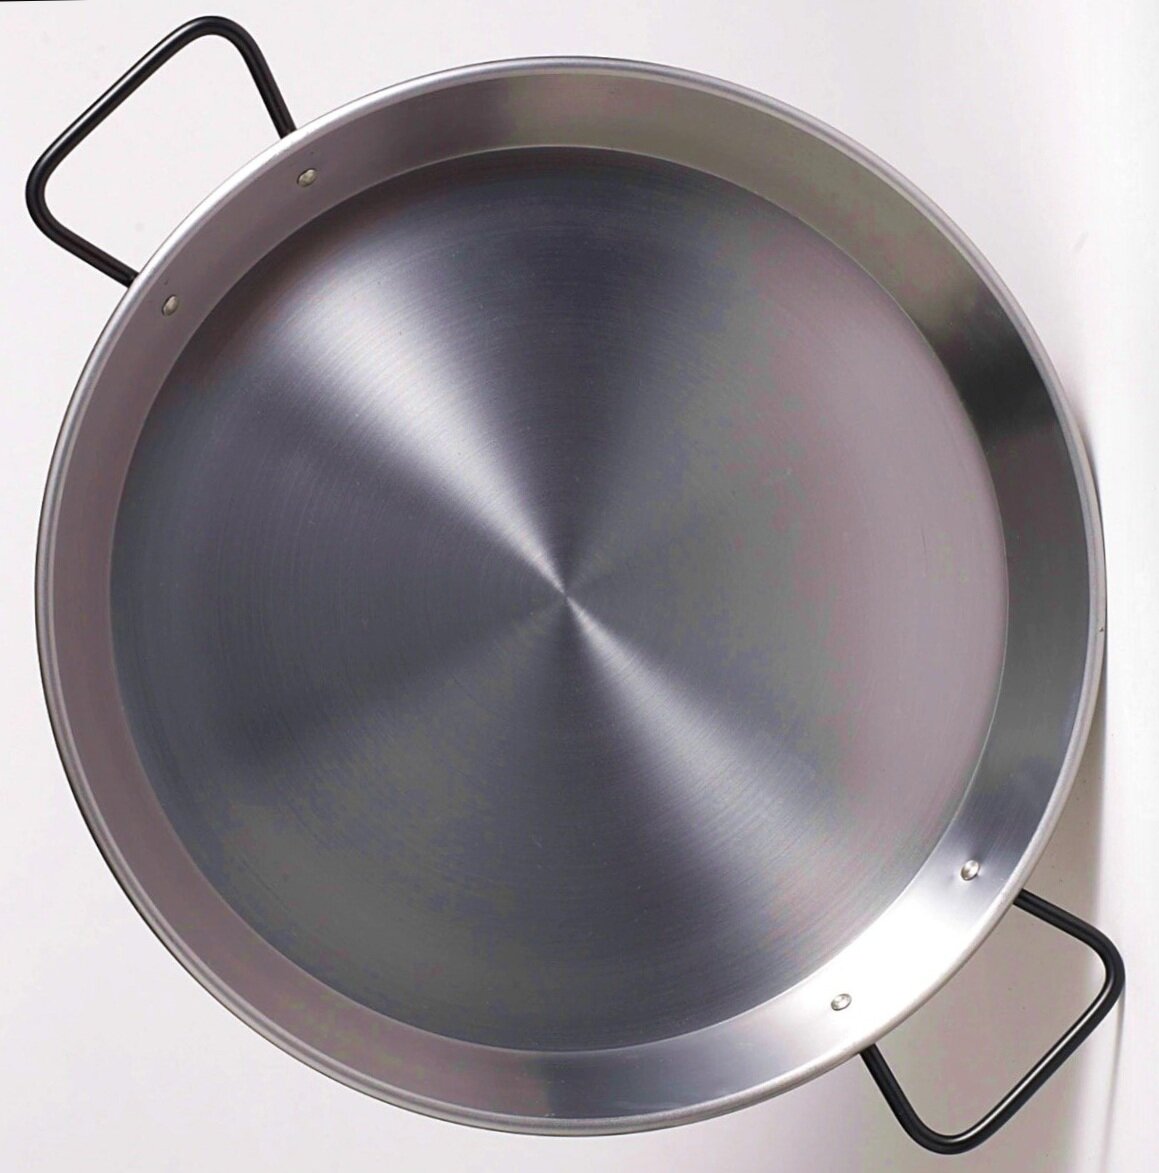 Double Gauge Steel Pan - Best for Induction cooktops